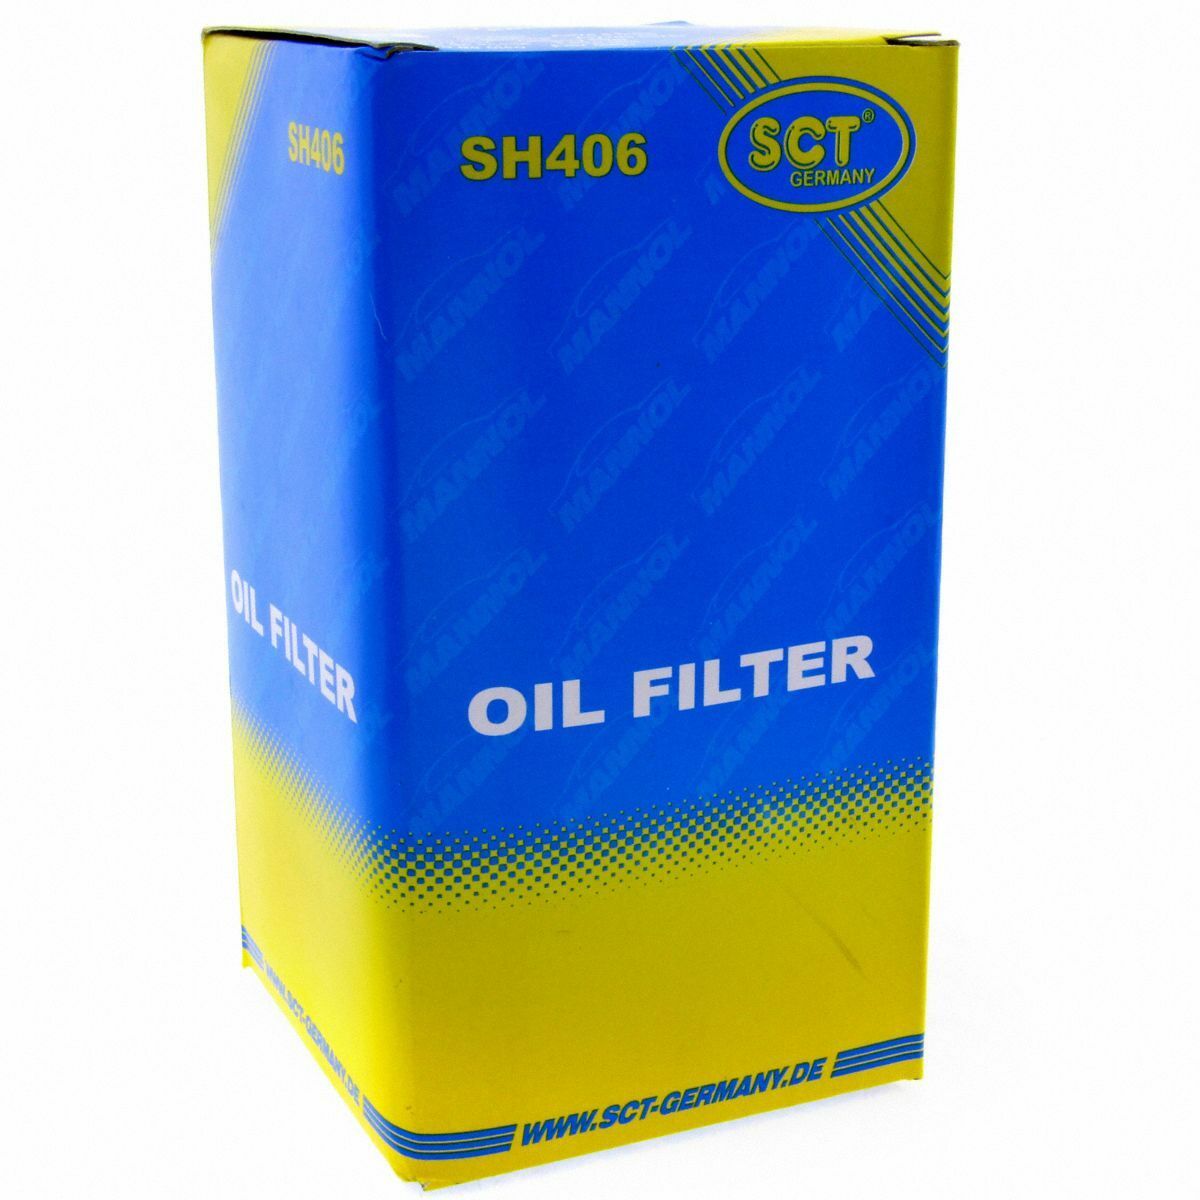 SCT Ölfilter SH 406 Filter Motorfilter Servicefilter Patronenfilter Ford MAN